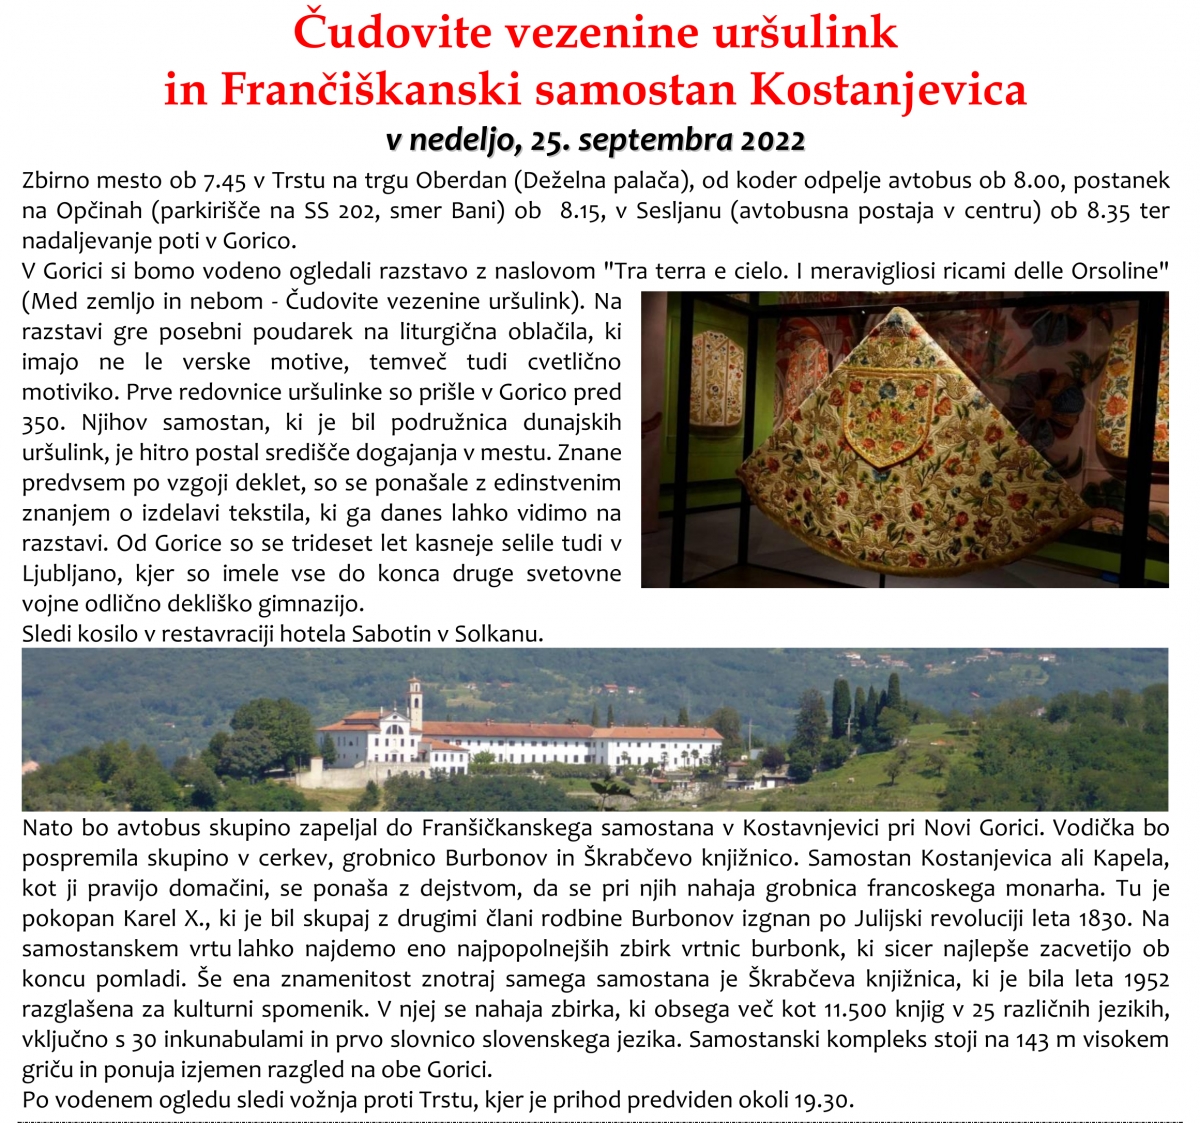 Čudovite vezenine uršulink in Frančiškanski samostan Kostanjevica pri Novi Gorici